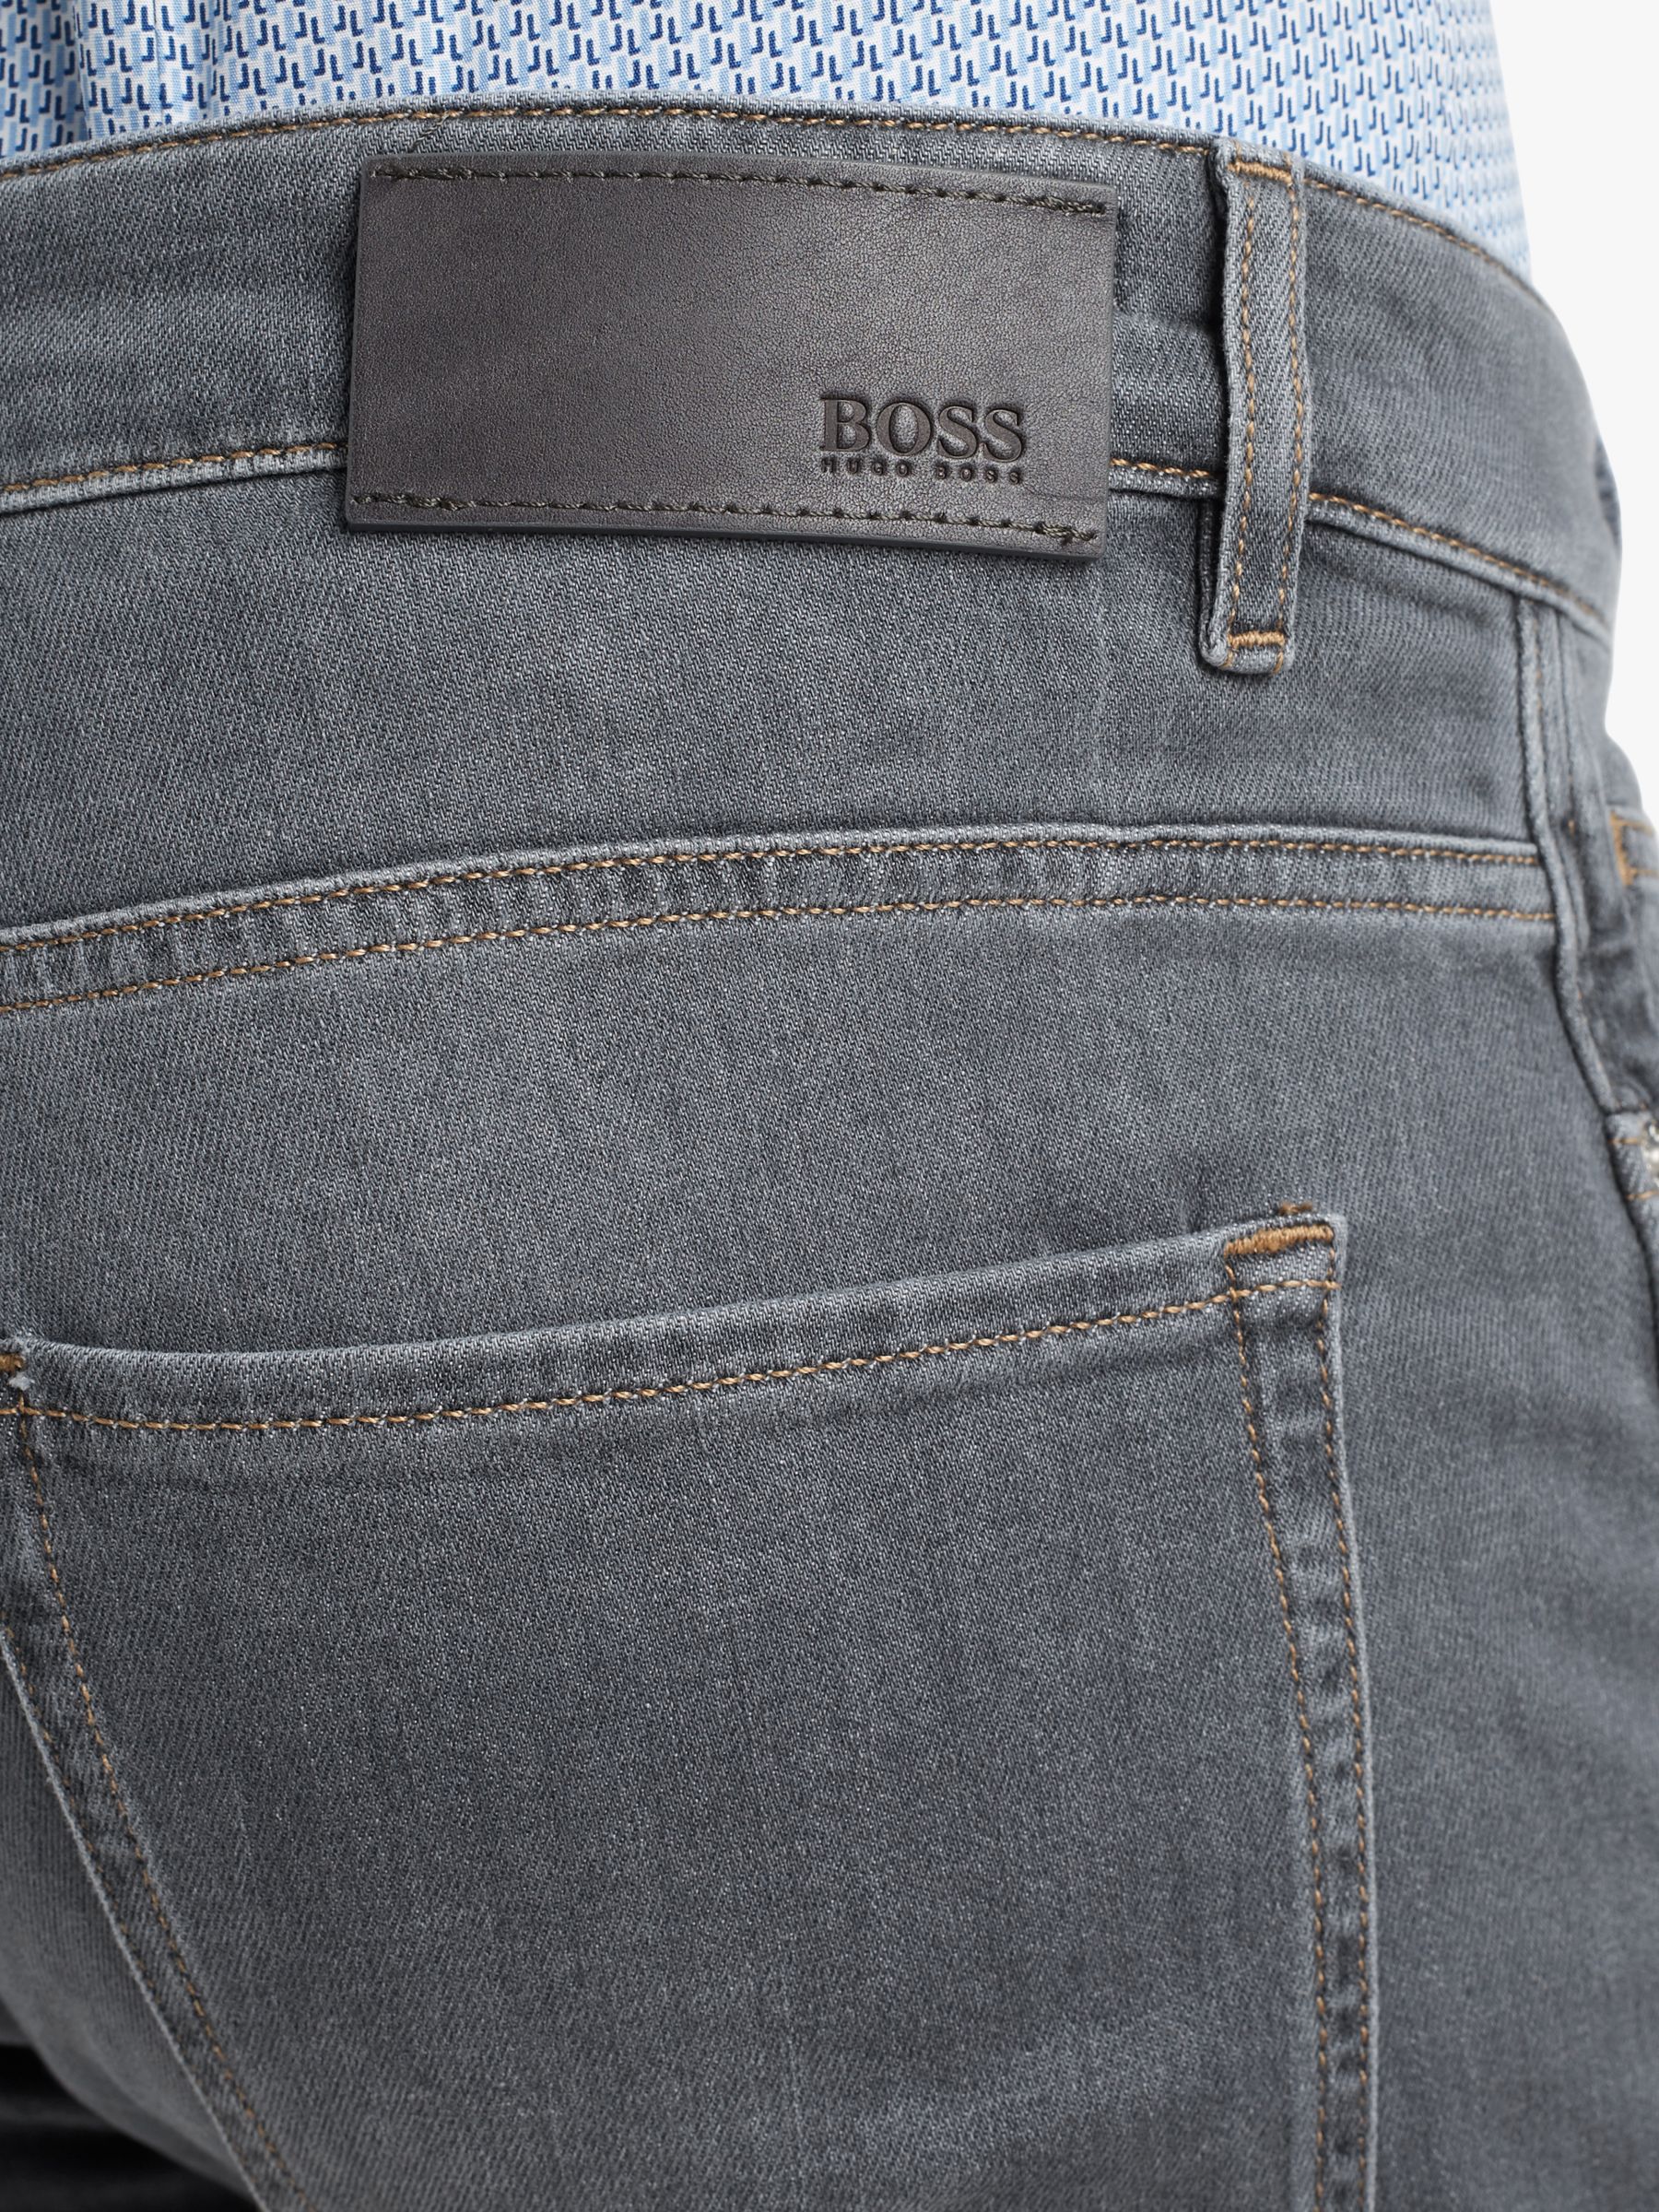 delaware jeans boss